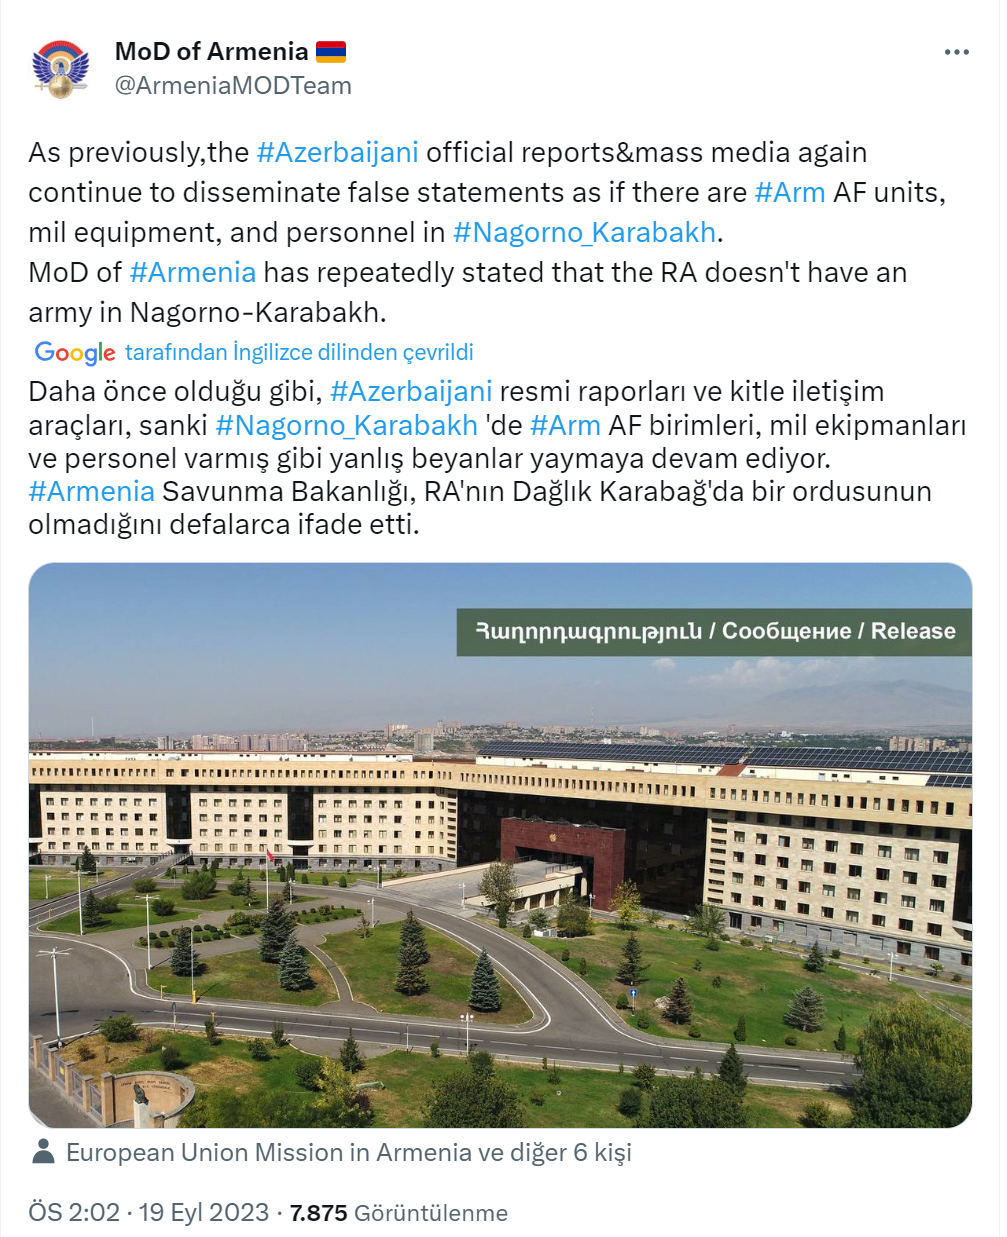 Ermenistan Savunma Bakanlığı: “Dağlık Karabağ’da Ermenistan’a ait bir ordu bulunmuyor”